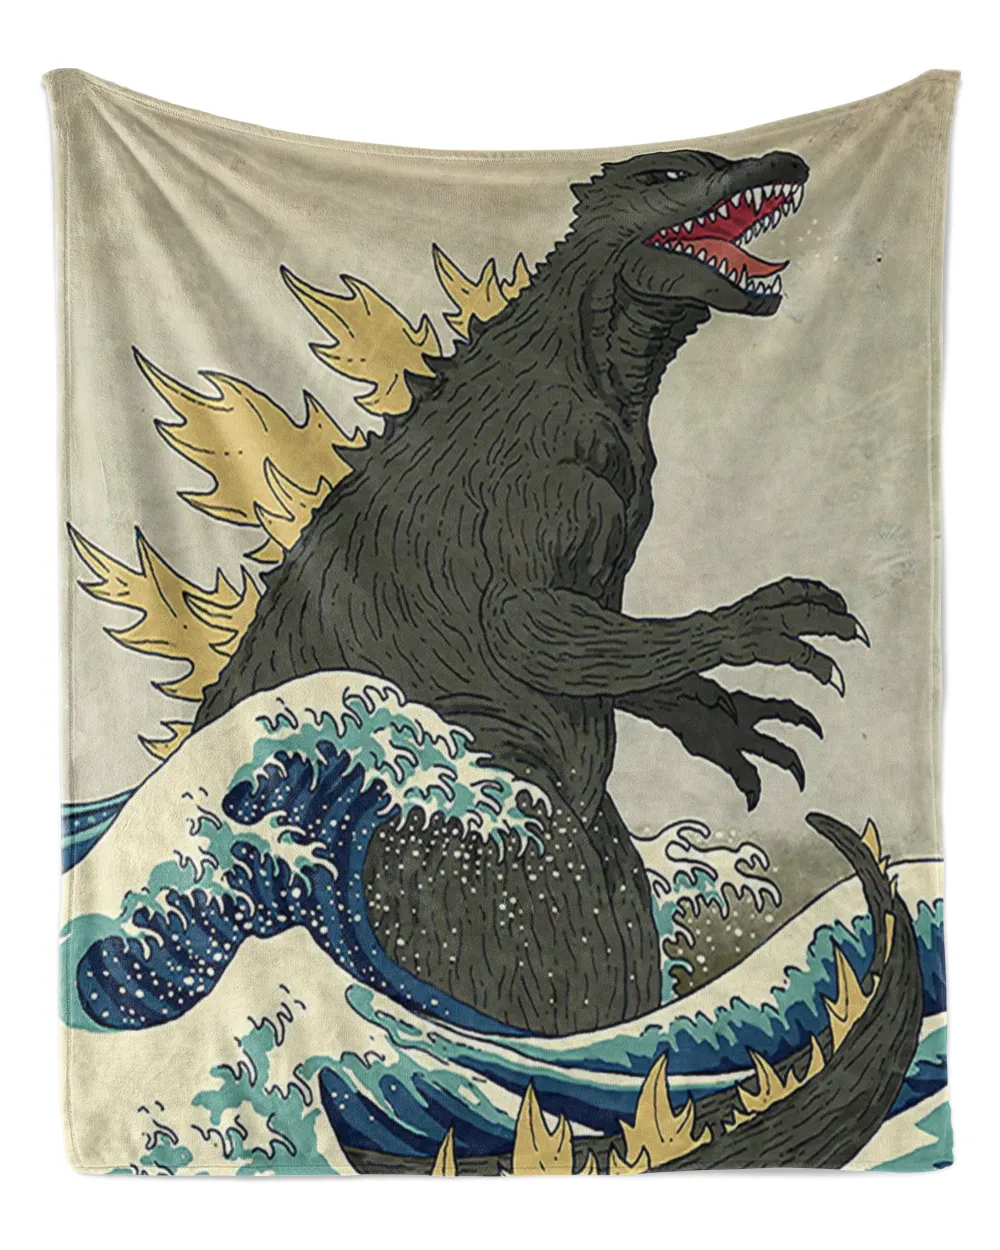 Japanese Monster Blanket, Blanket Soft Throw Blanket for Living Room Japanese Decor Warm Blanket Plush Gift